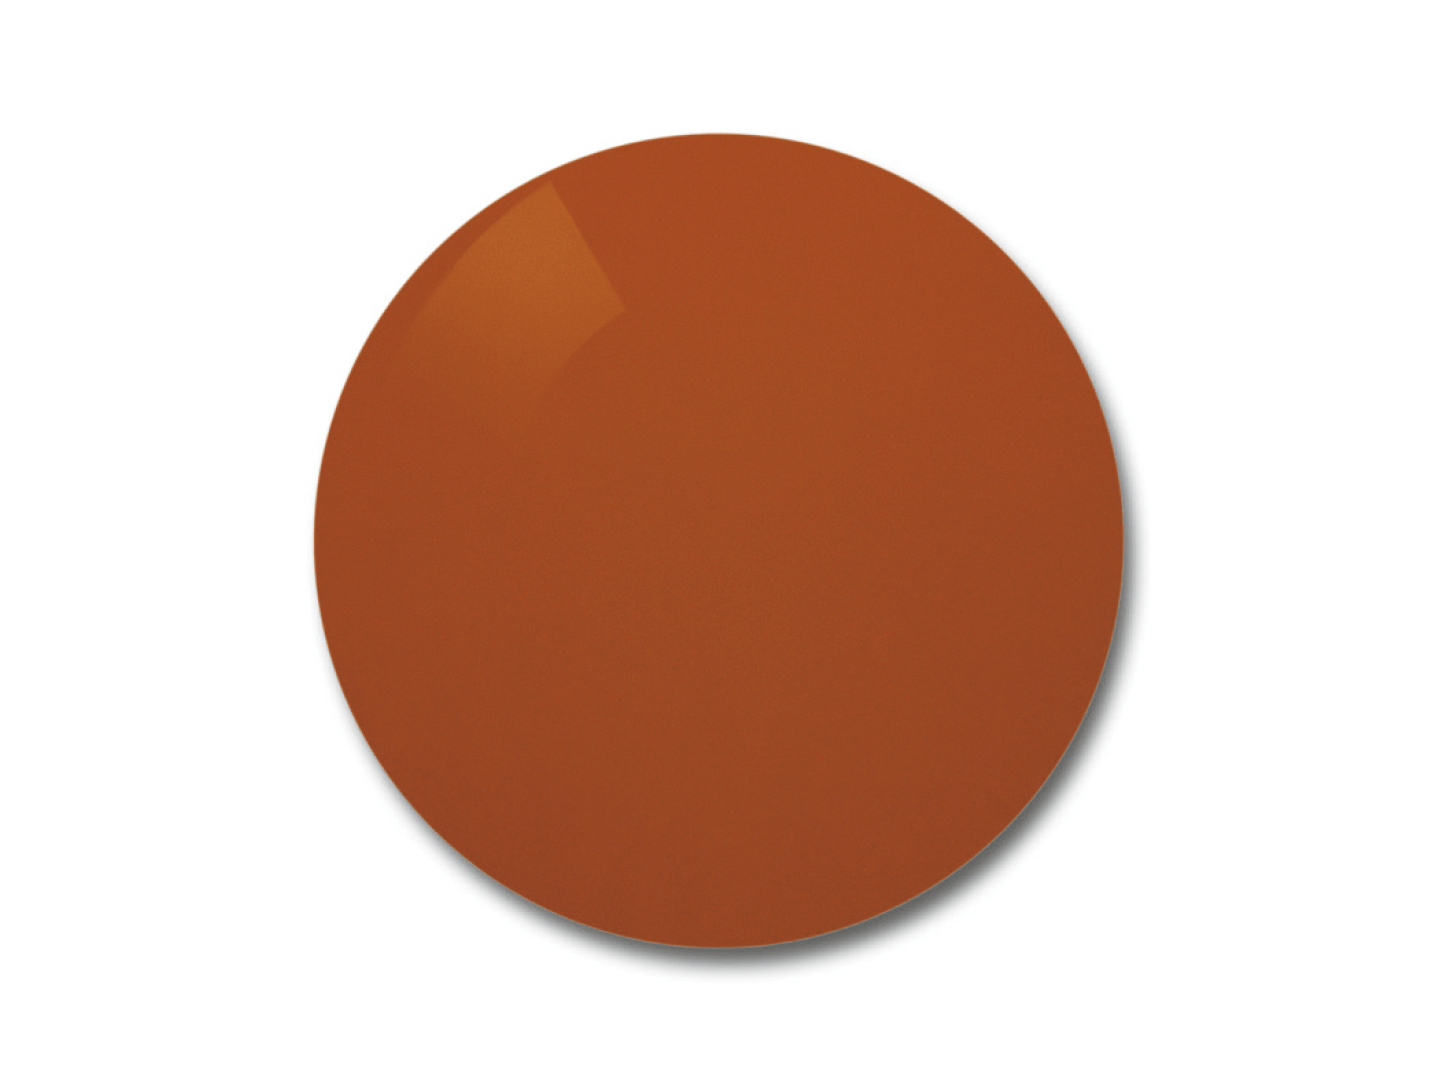 Exemplu de culoare ale nuanței de lentile Skylet® Fun. 